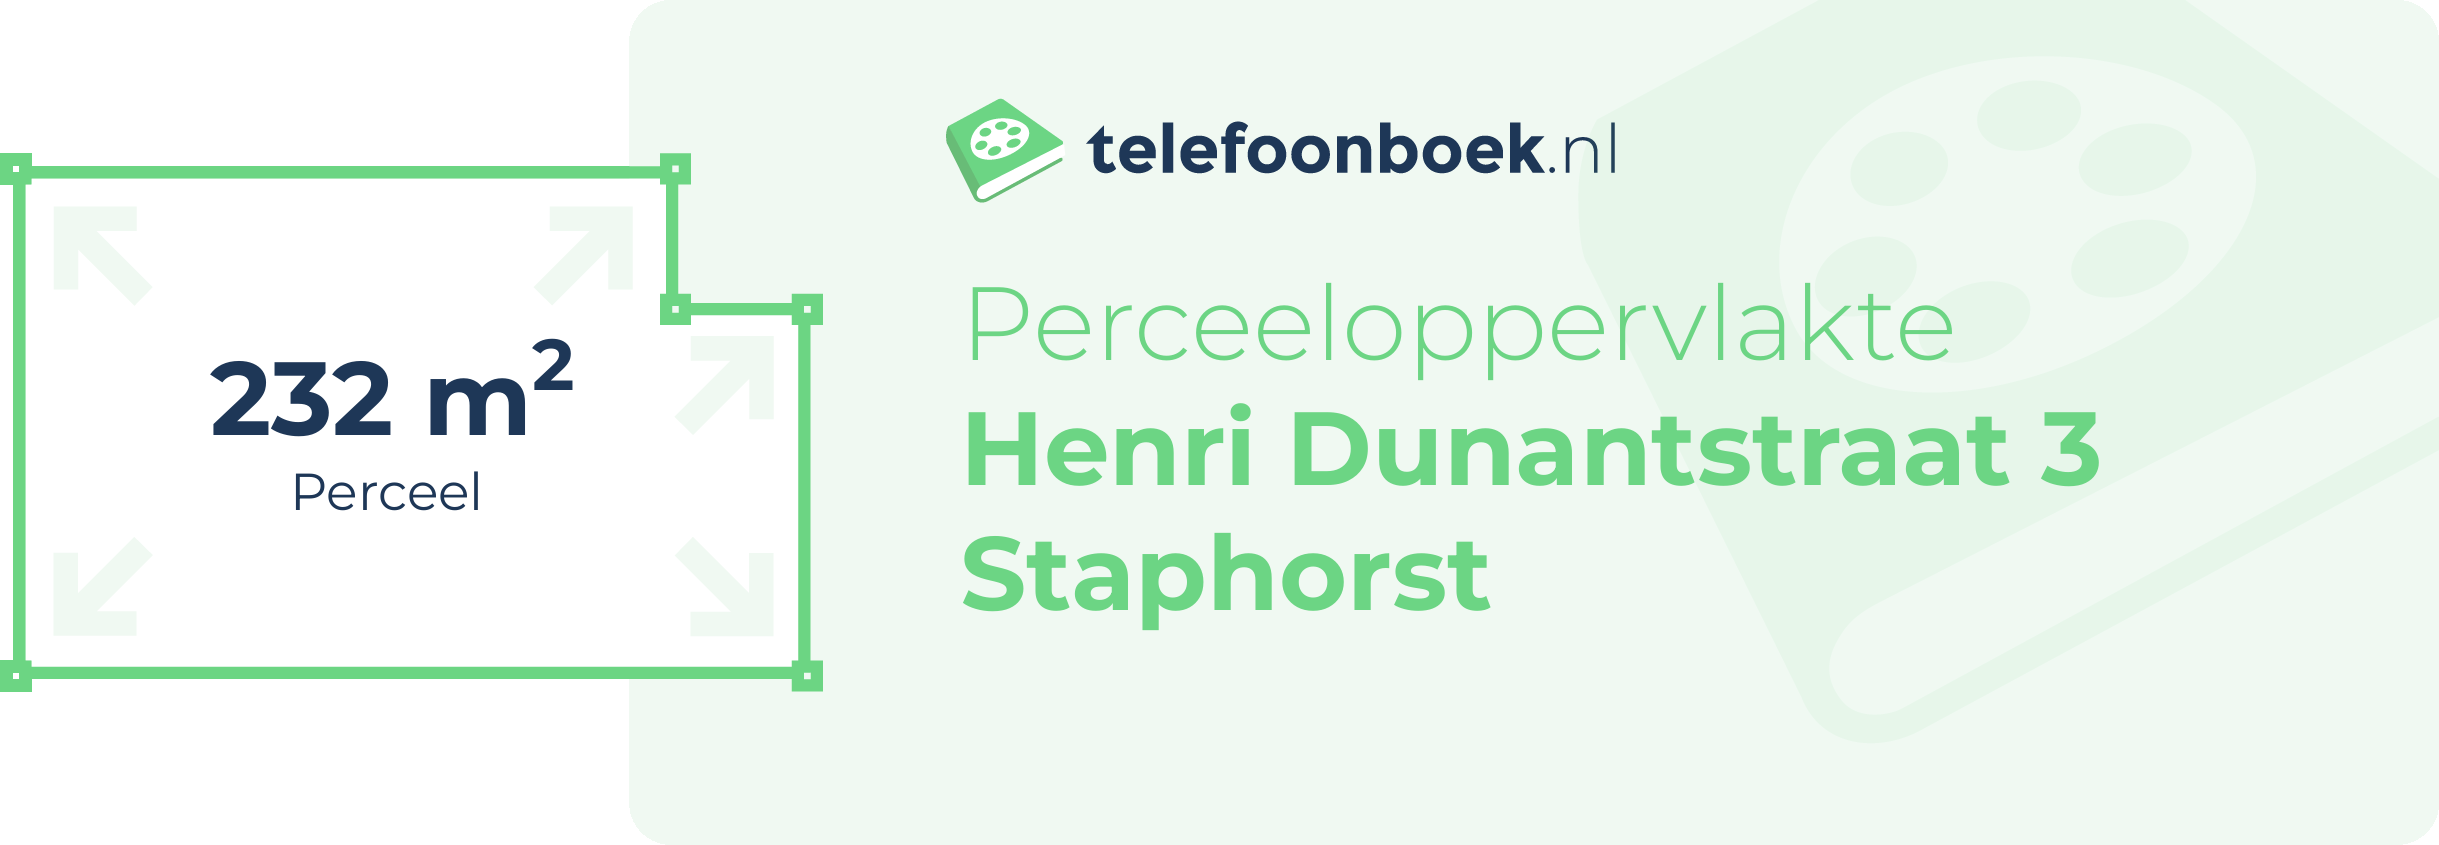 Perceeloppervlakte Henri Dunantstraat 3 Staphorst